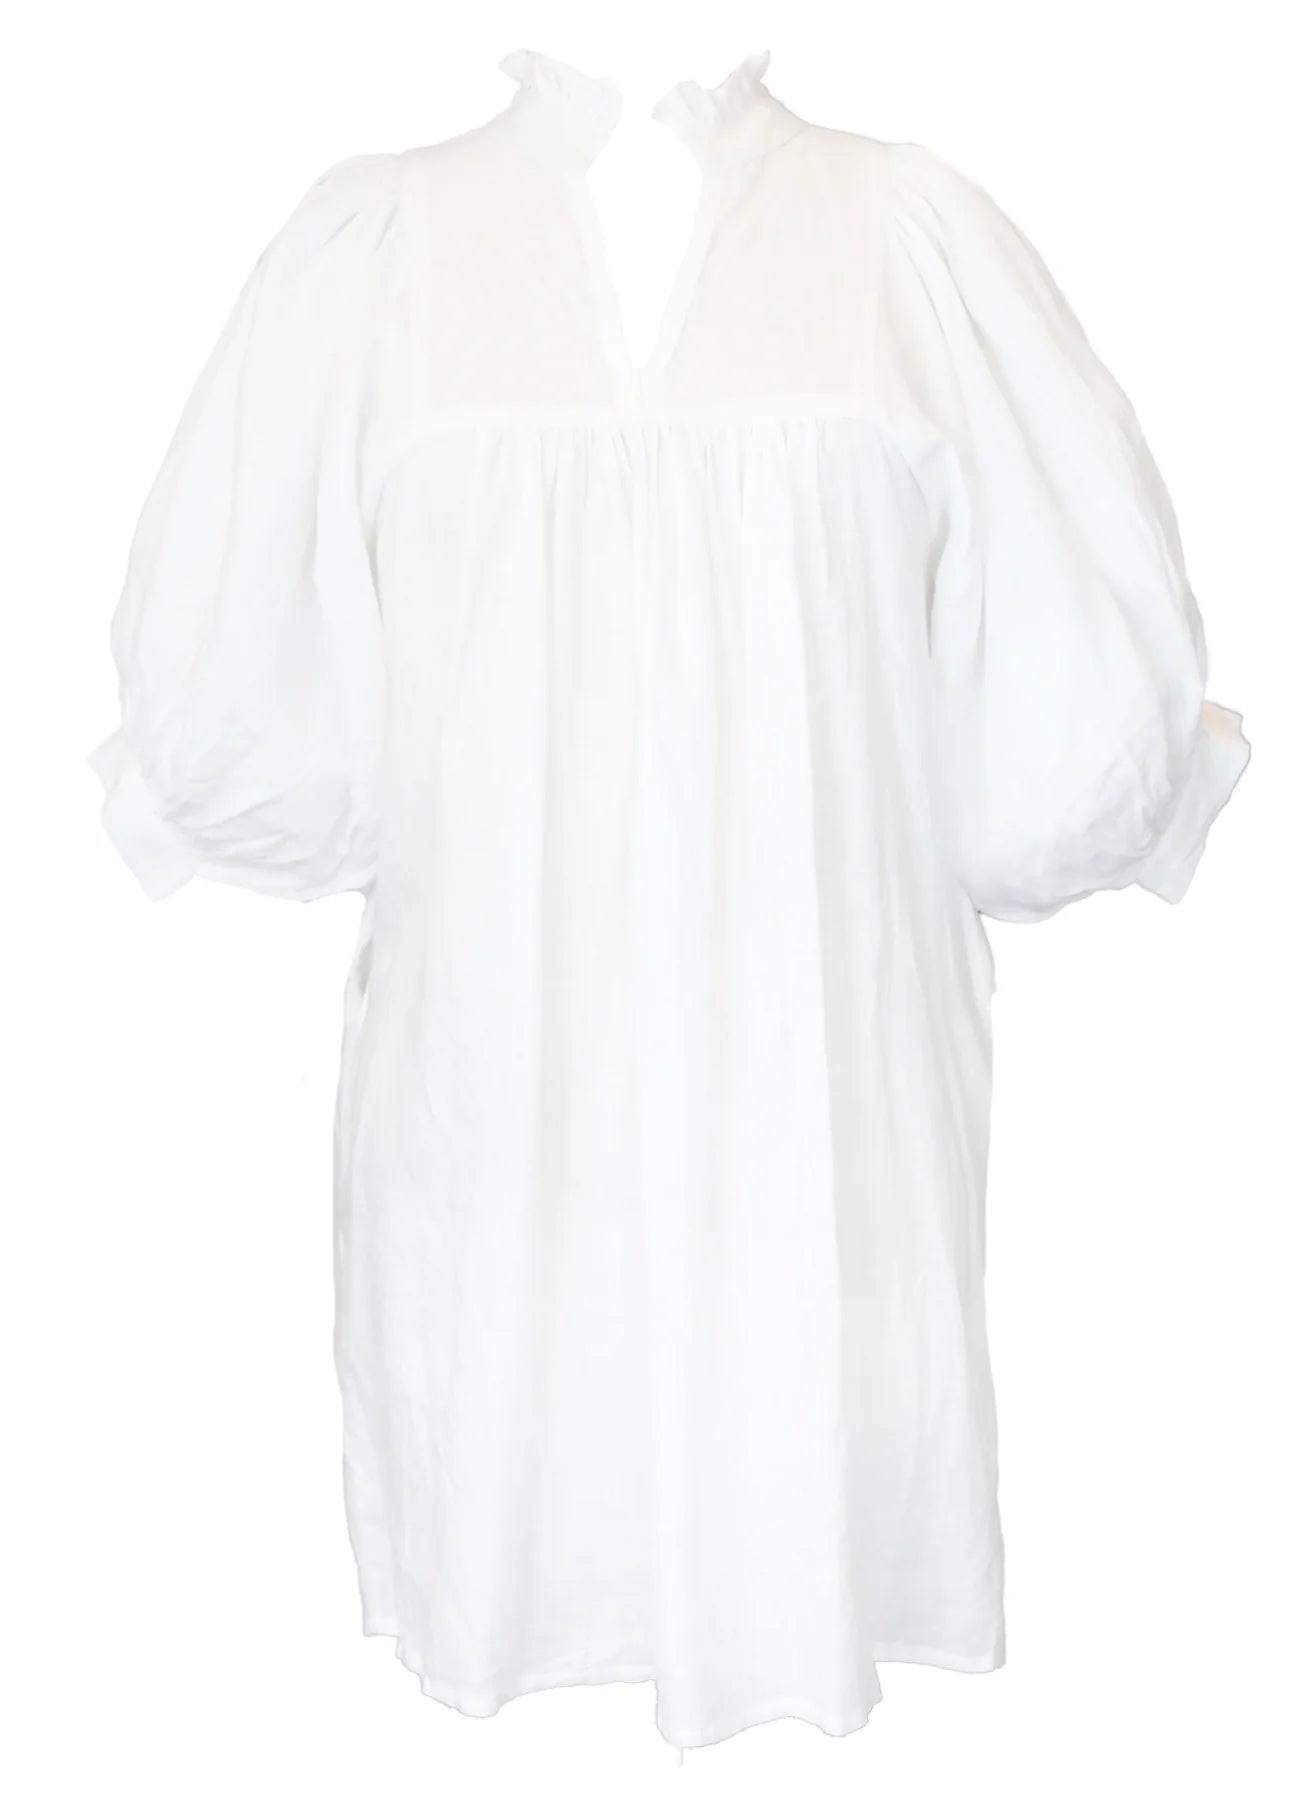 CJ LAING Linen Smock Dress White